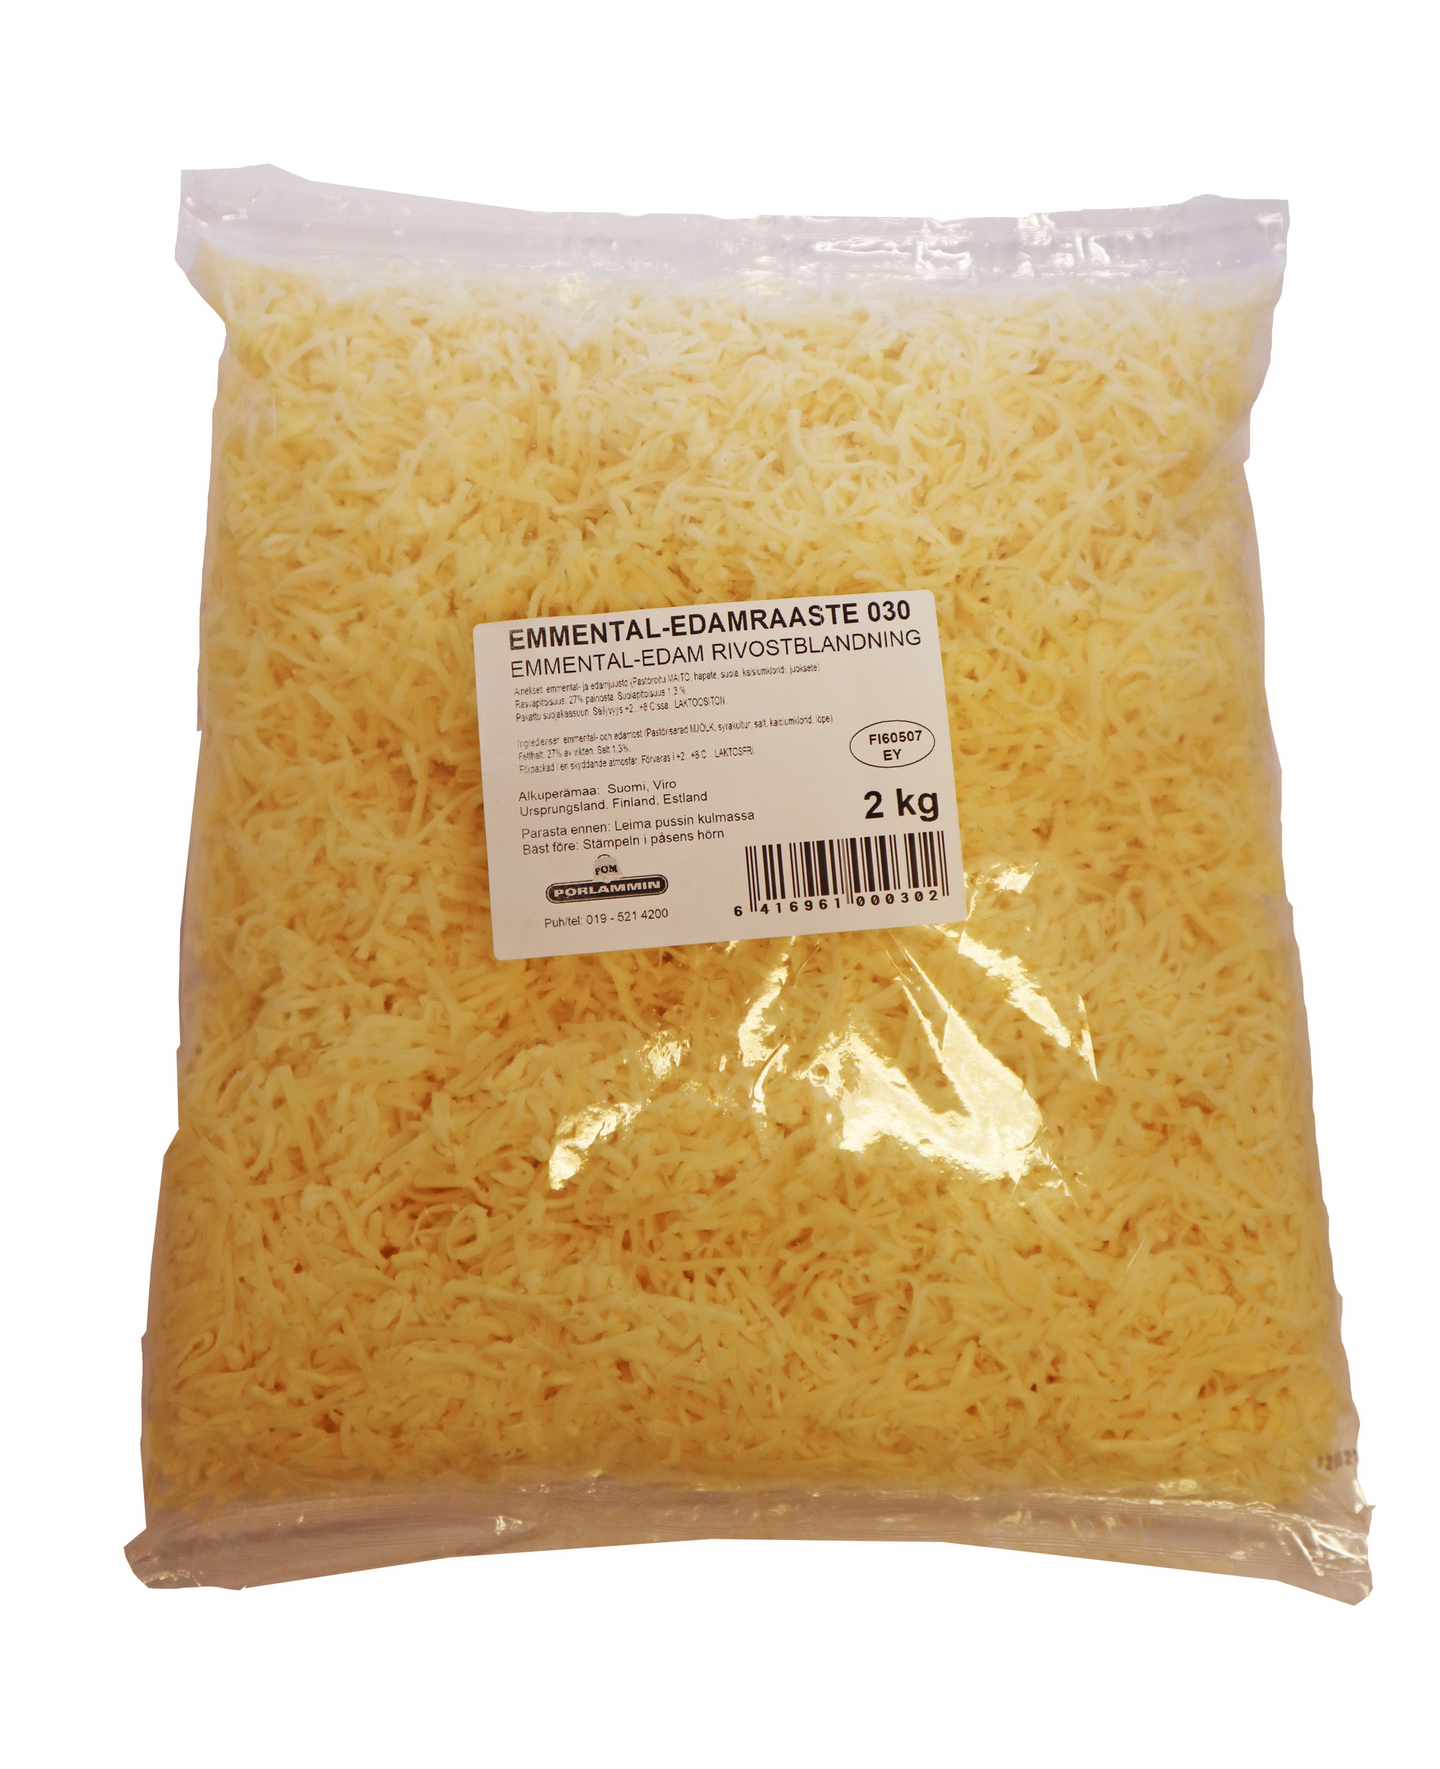 Porlammin Emmental-Edam juustoraaste 2kg laktoositon